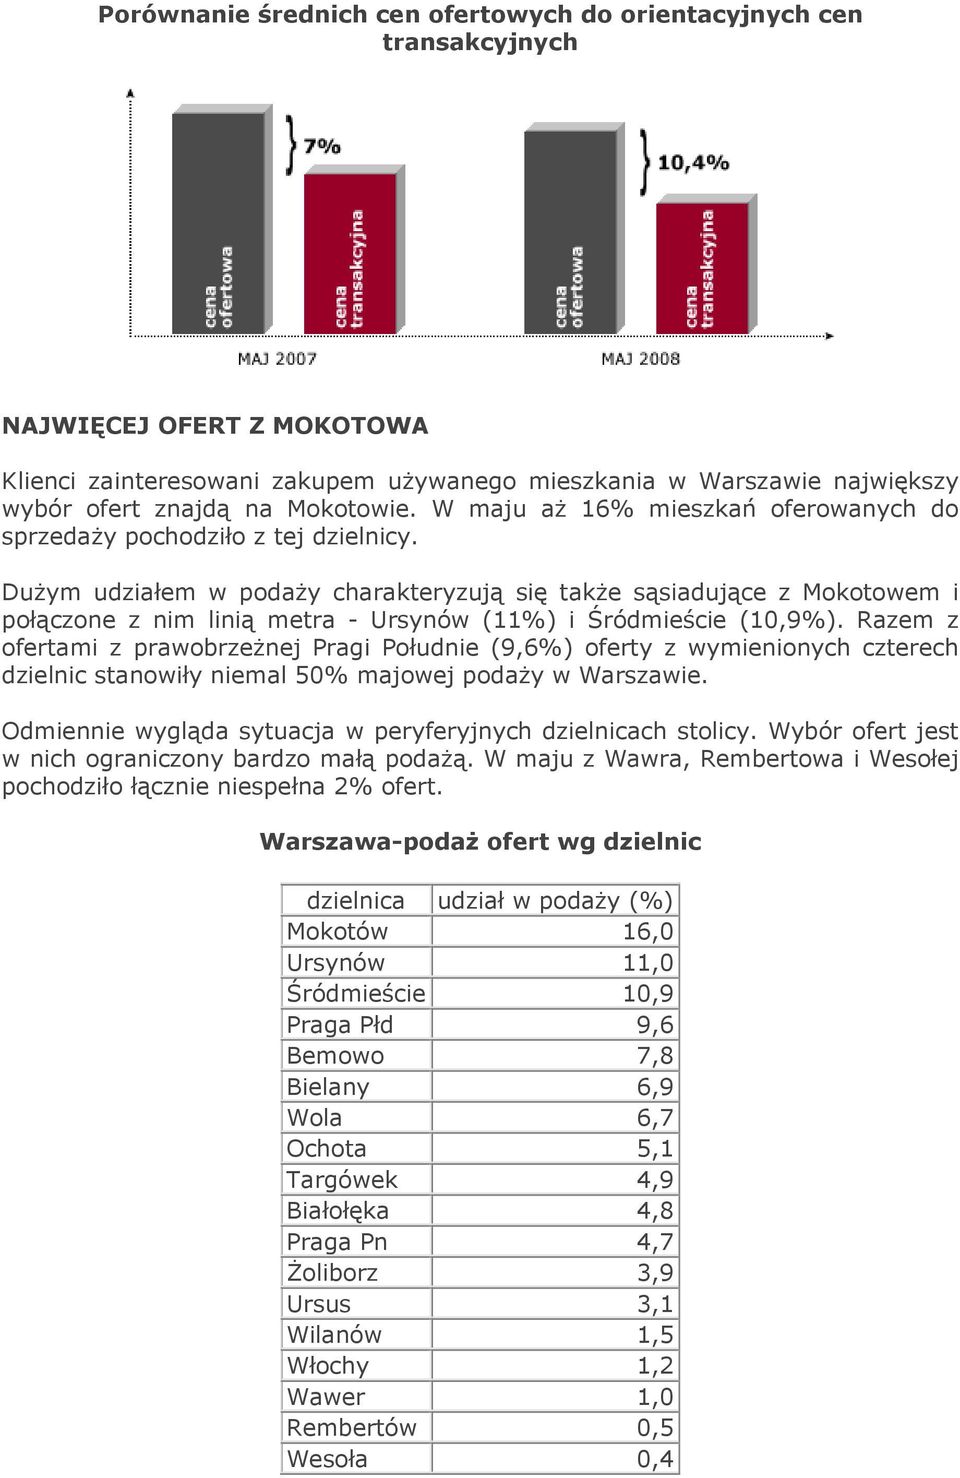 Dużym udziałem w podaży charakteryzują się także sąsiadujące z Mokotowem i połączone z nim linią metra - Ursynów (11%) i Śródmieście (10,9%).